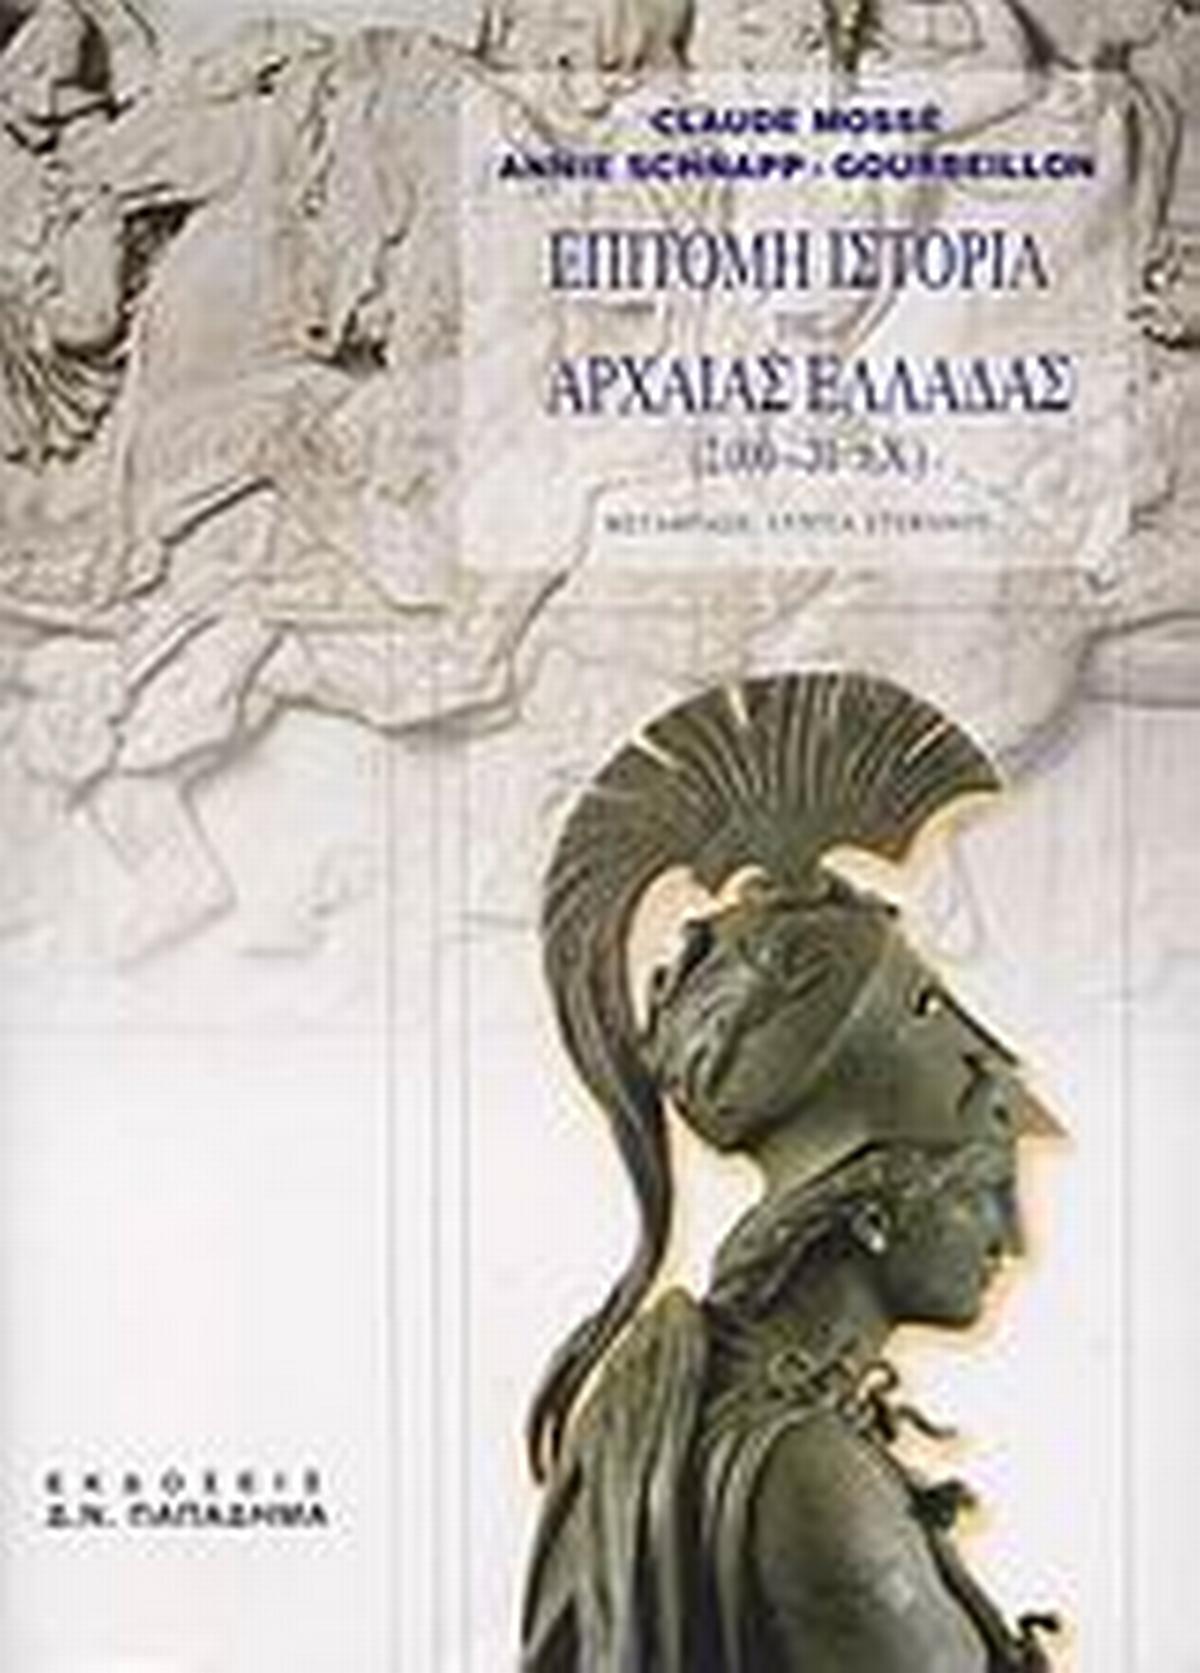 Επίτομη ιστορία της αρχαίας Ελλάδας 2000 - 31 π.Χ.